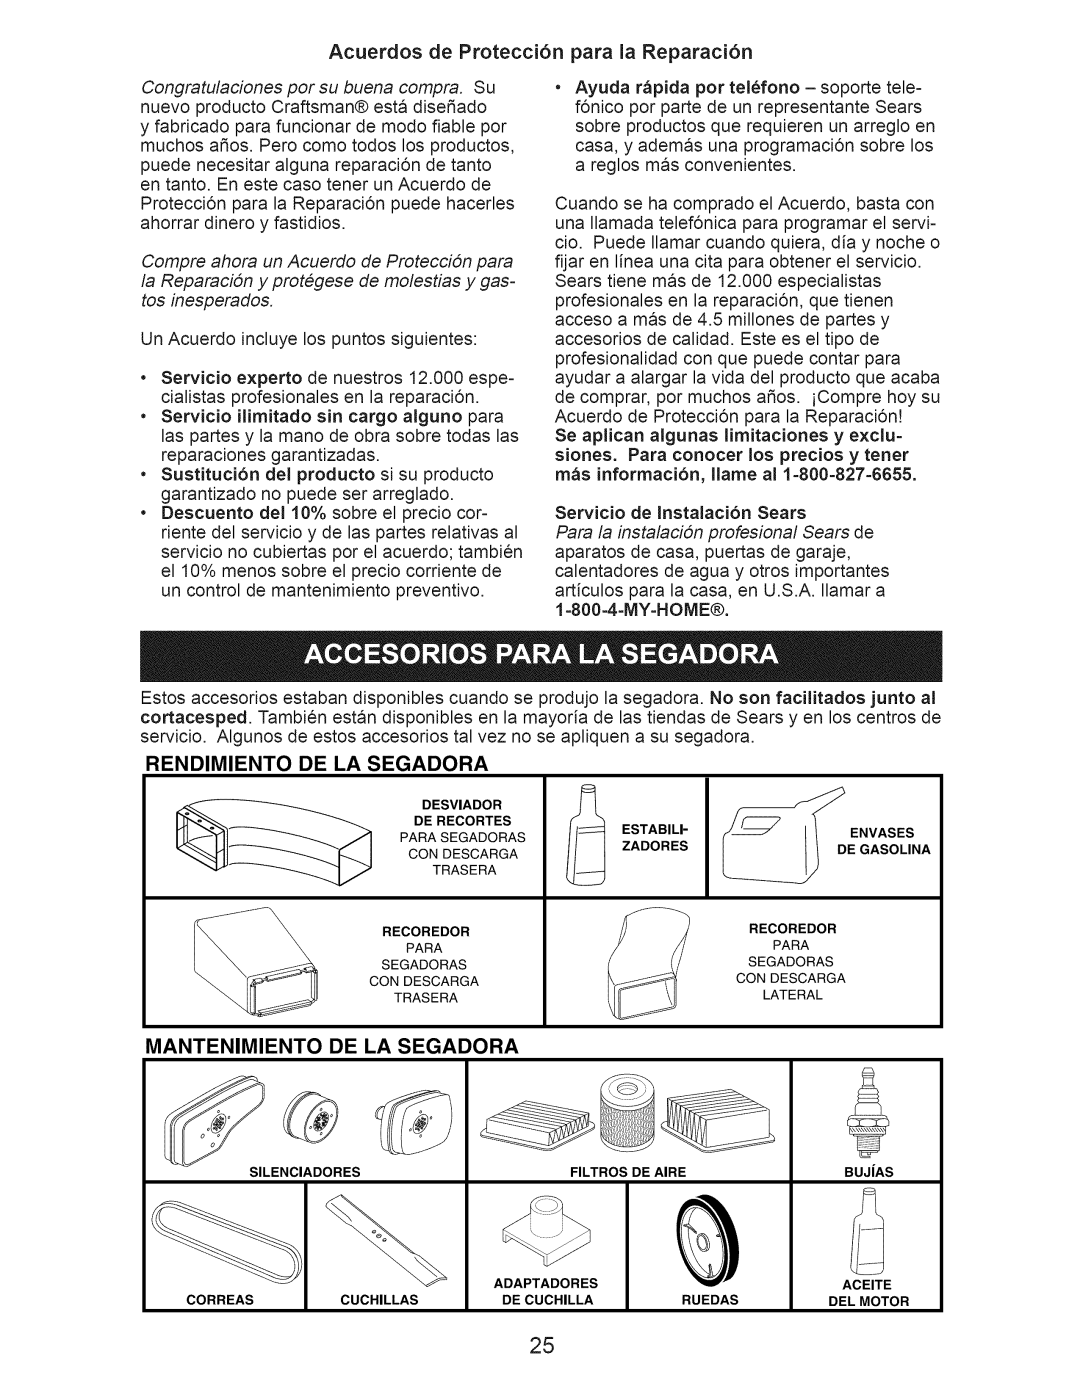 Craftsman 917.374110 Acuerdos de Protecci6n para la Reparaci6n, Rendimiento De La Segadora, Mantenimiento De La Segadora 